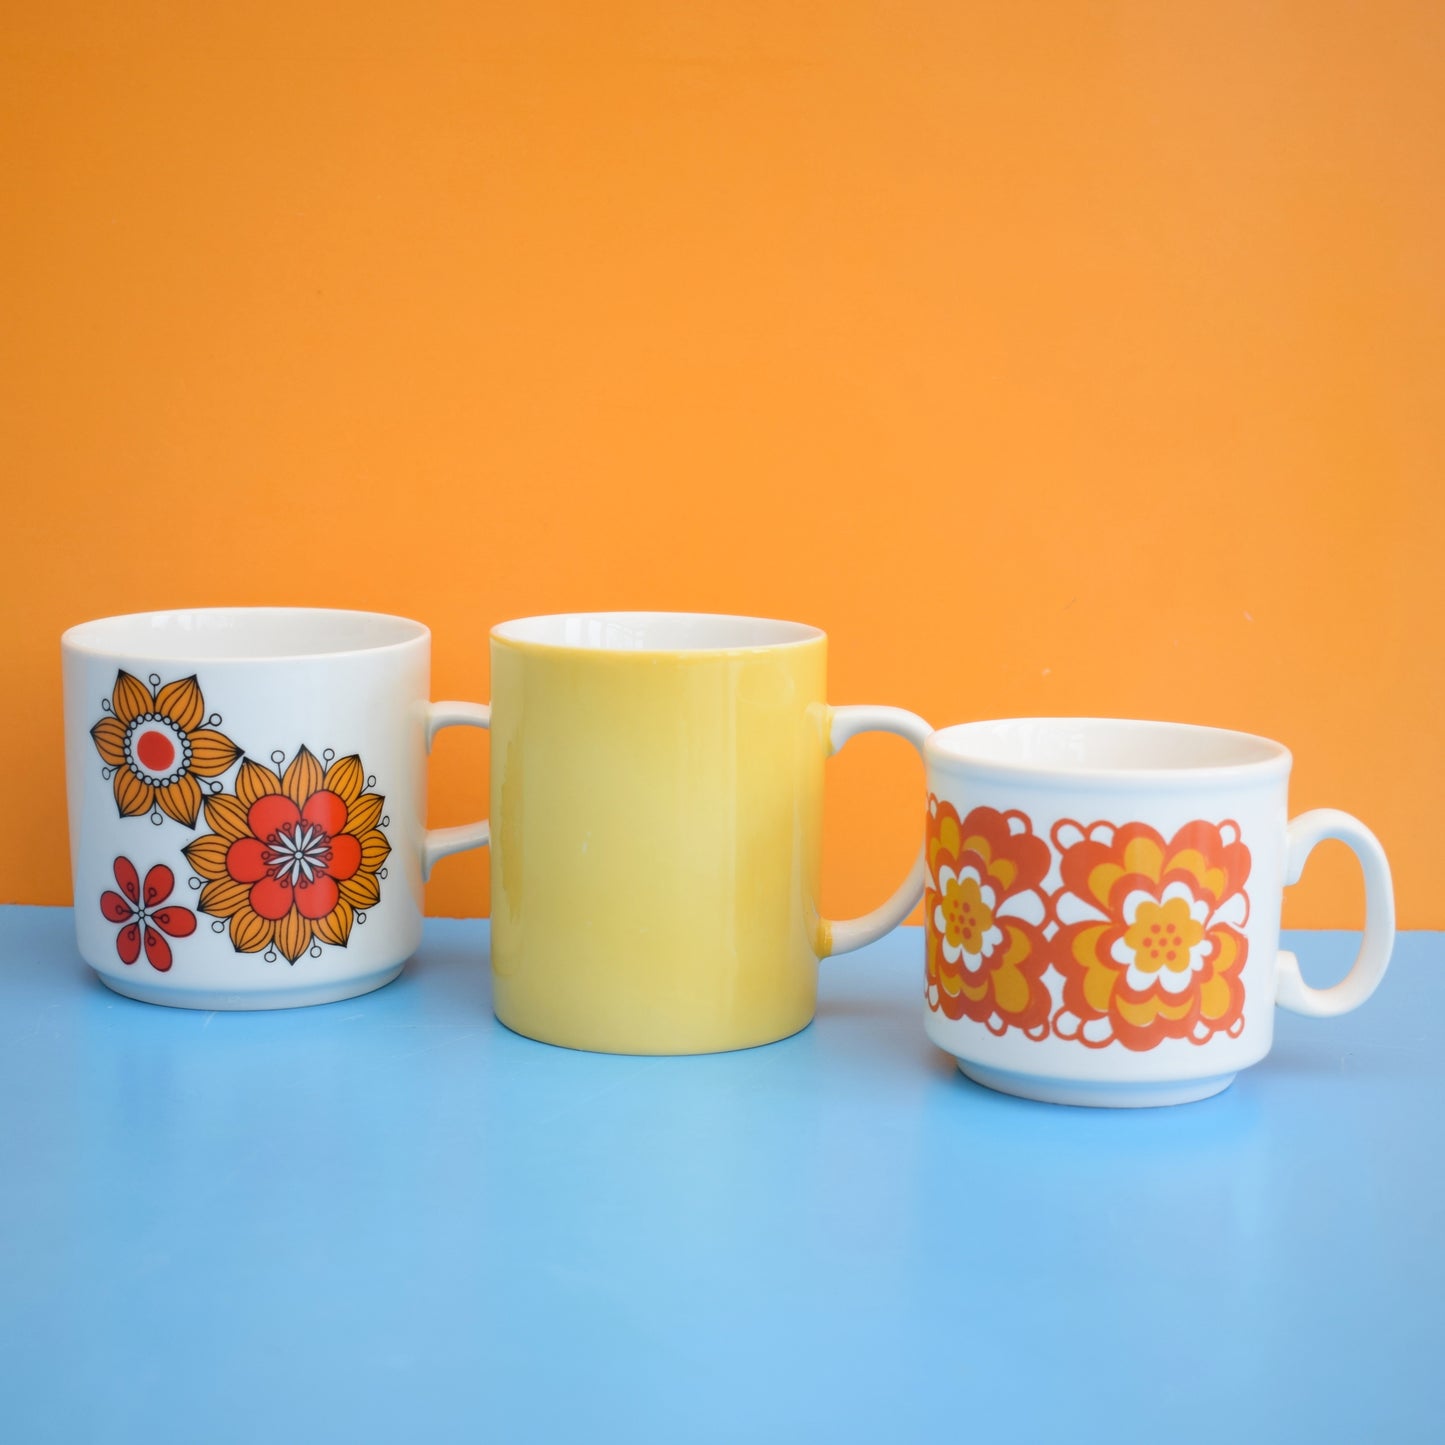 Vintage 1960s Vintage Mugs - Orange